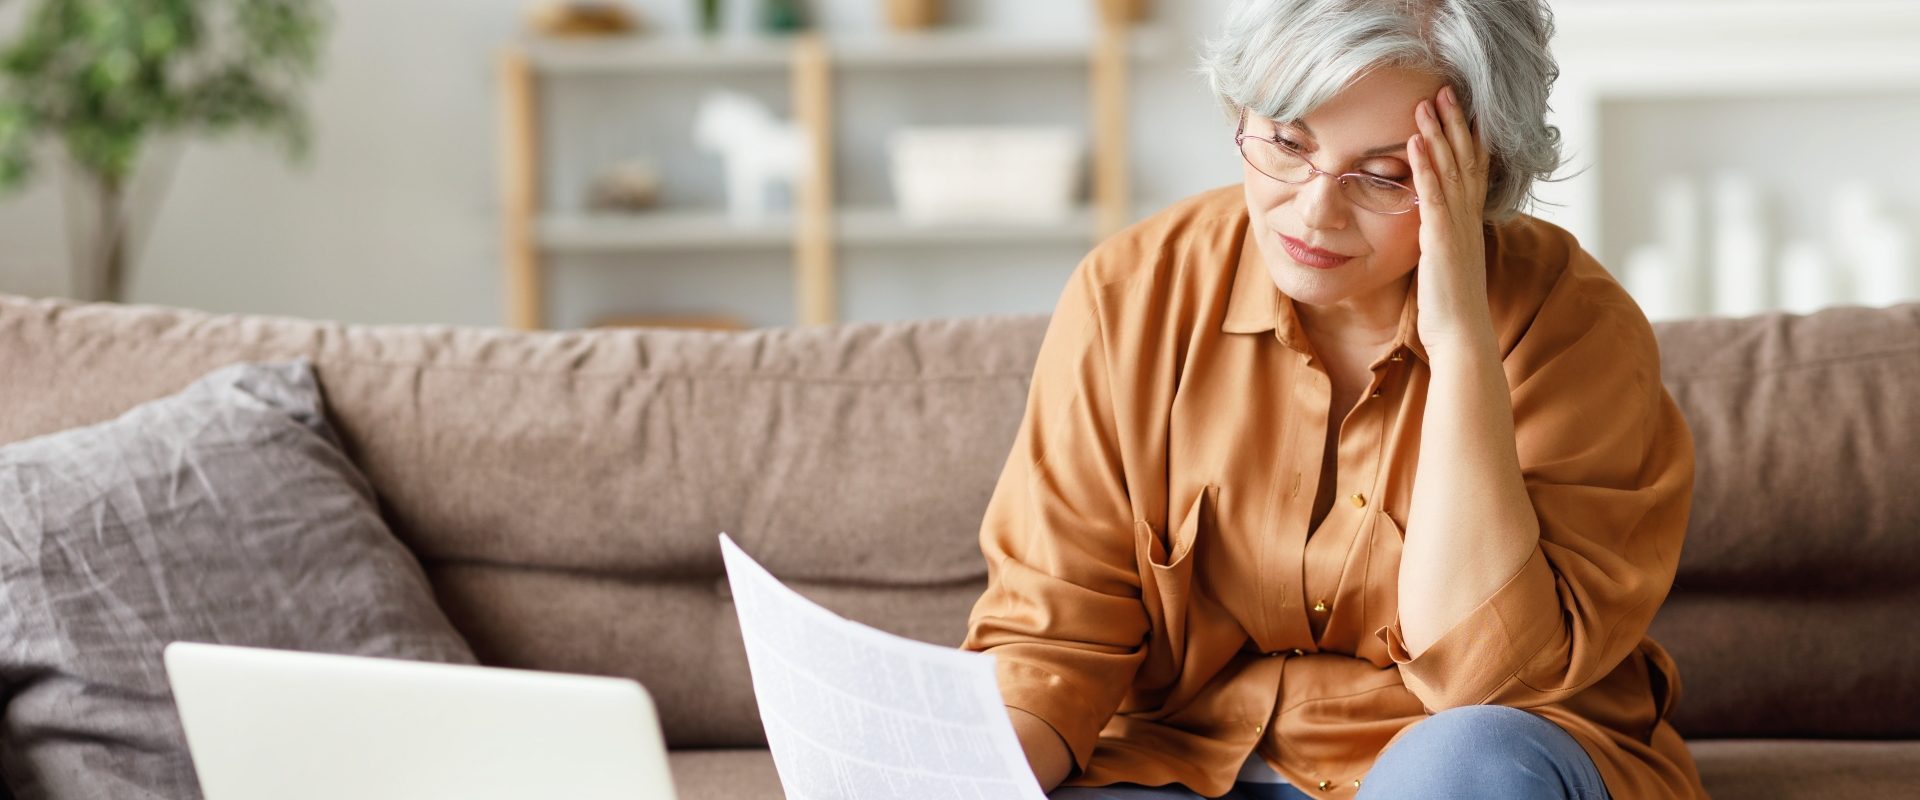 Leki homeopatyczne dla zestresowanych. Starsza zestresowana kobieta czyta ważne dokumenty, siedząc przed laptopem na kanapie w domu.